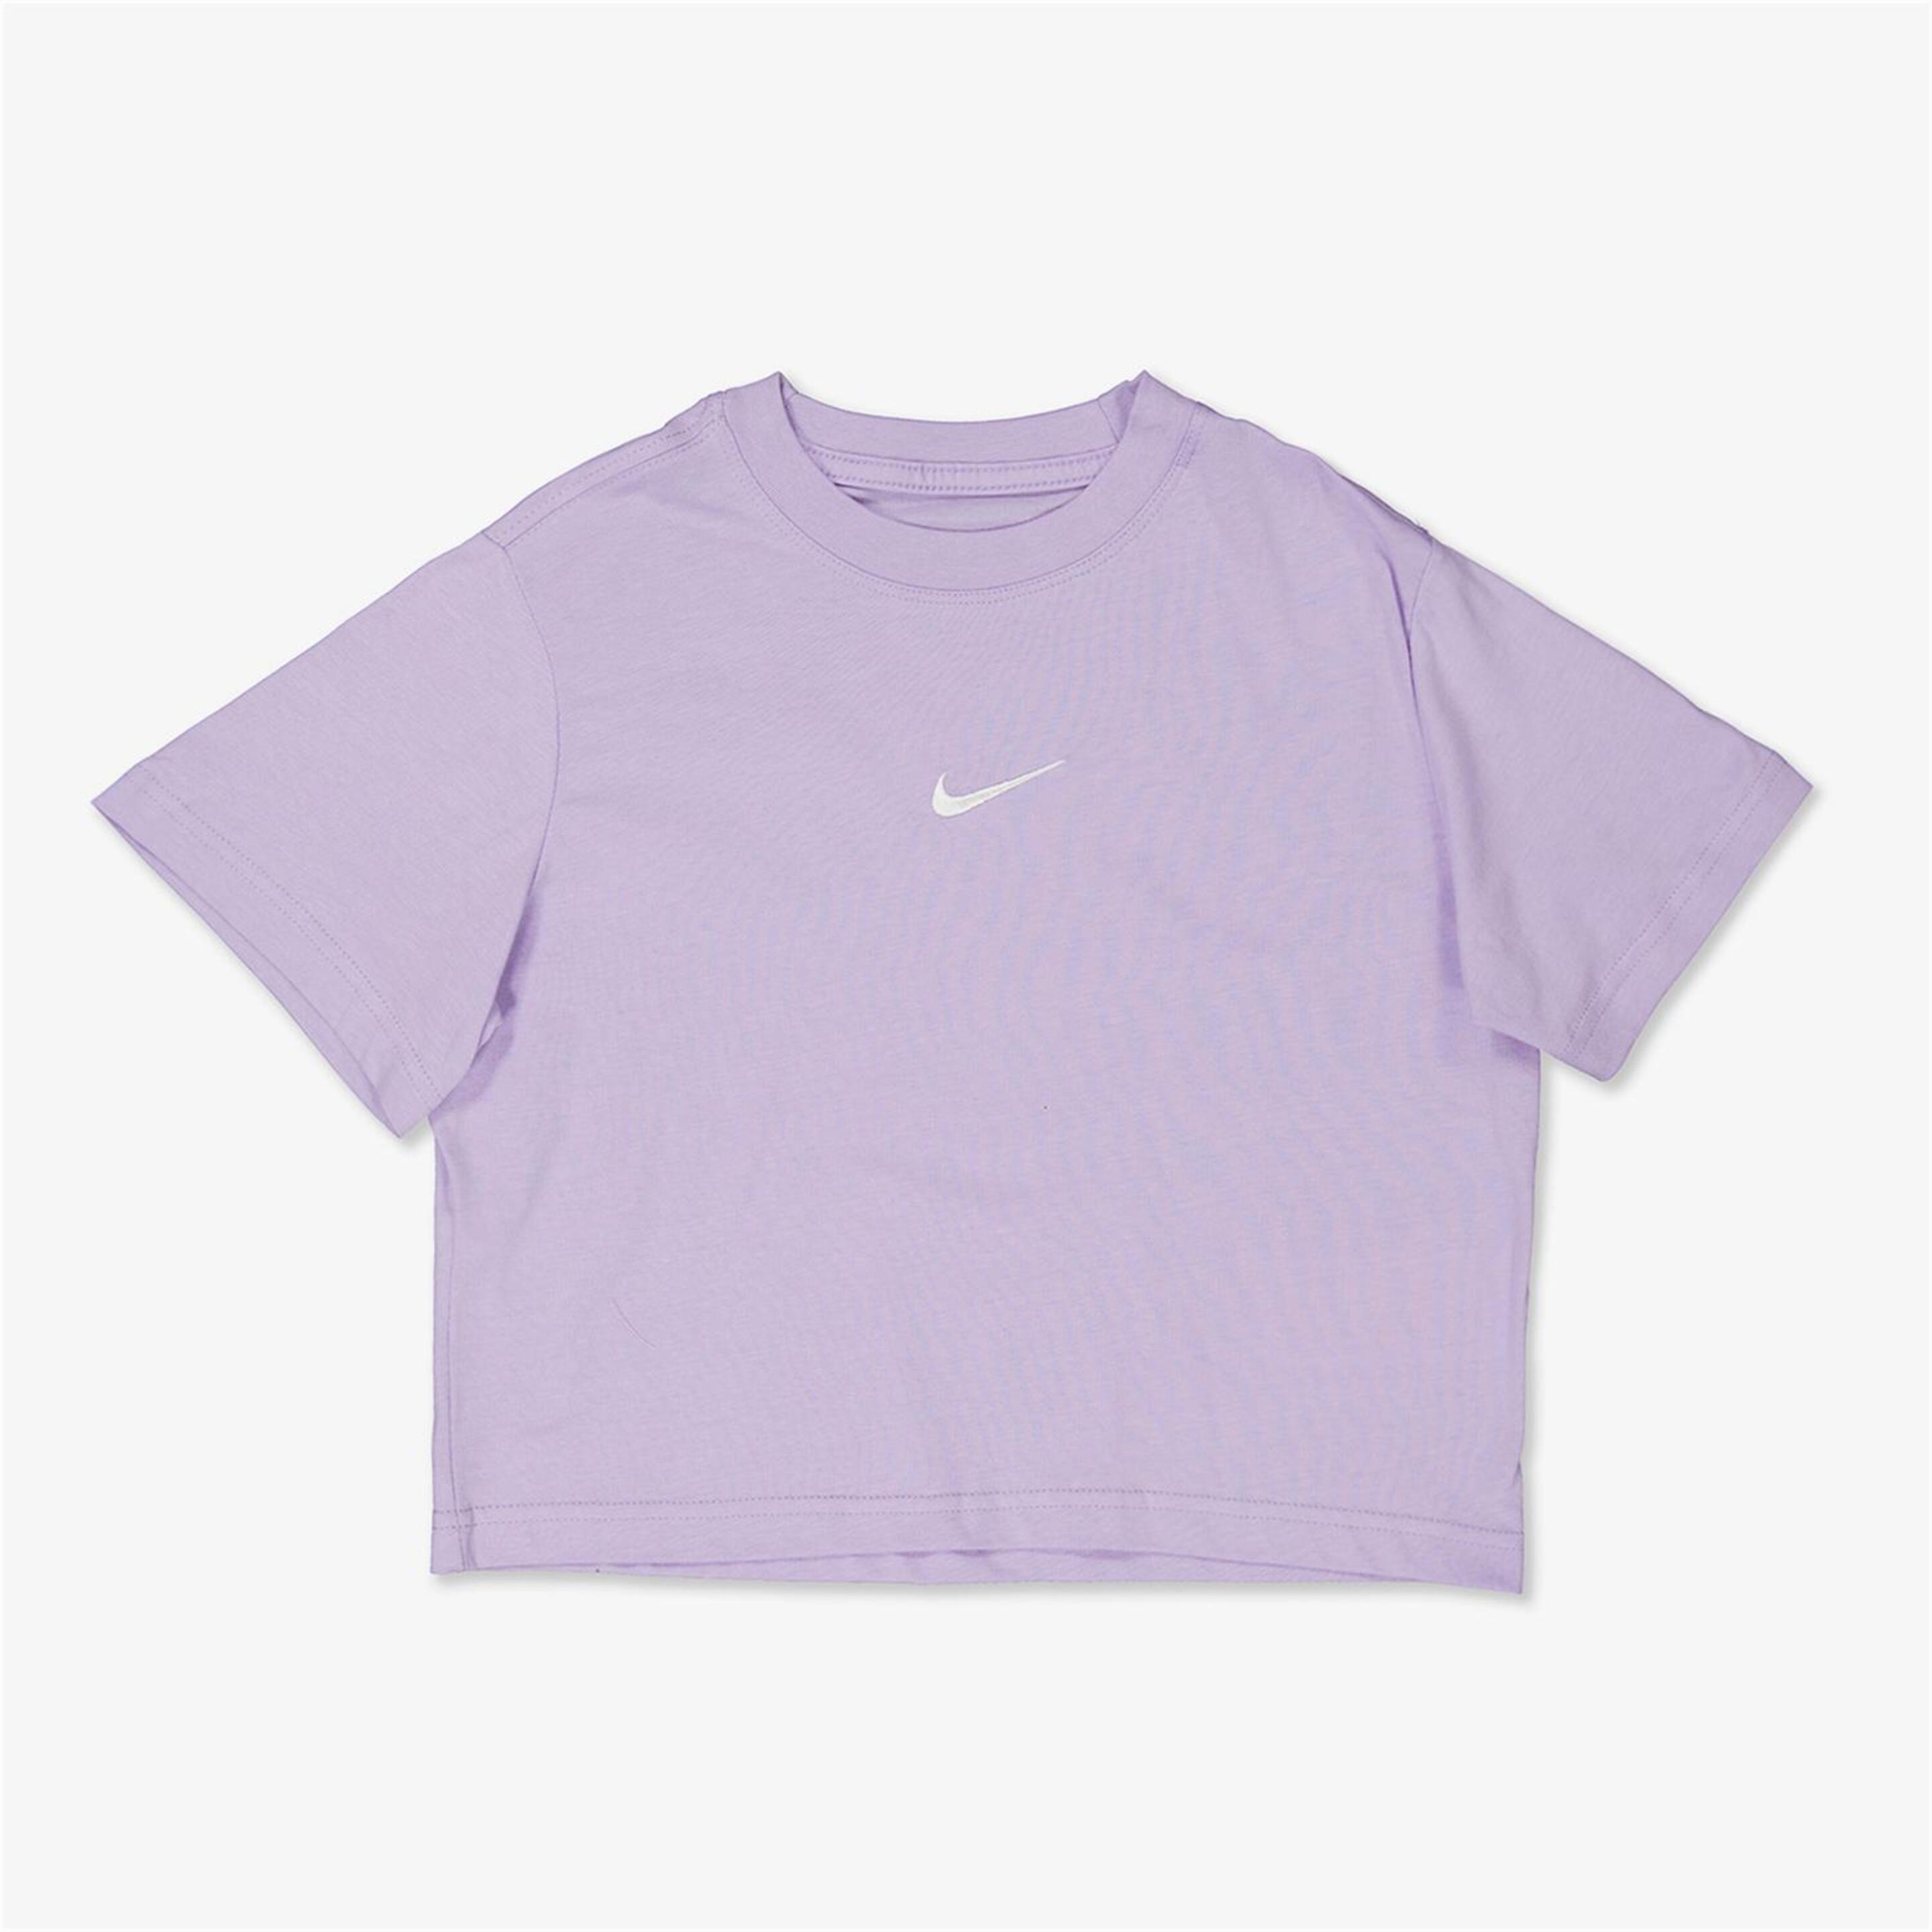 T-shirt Nike - morado - T-shirt Rapariga